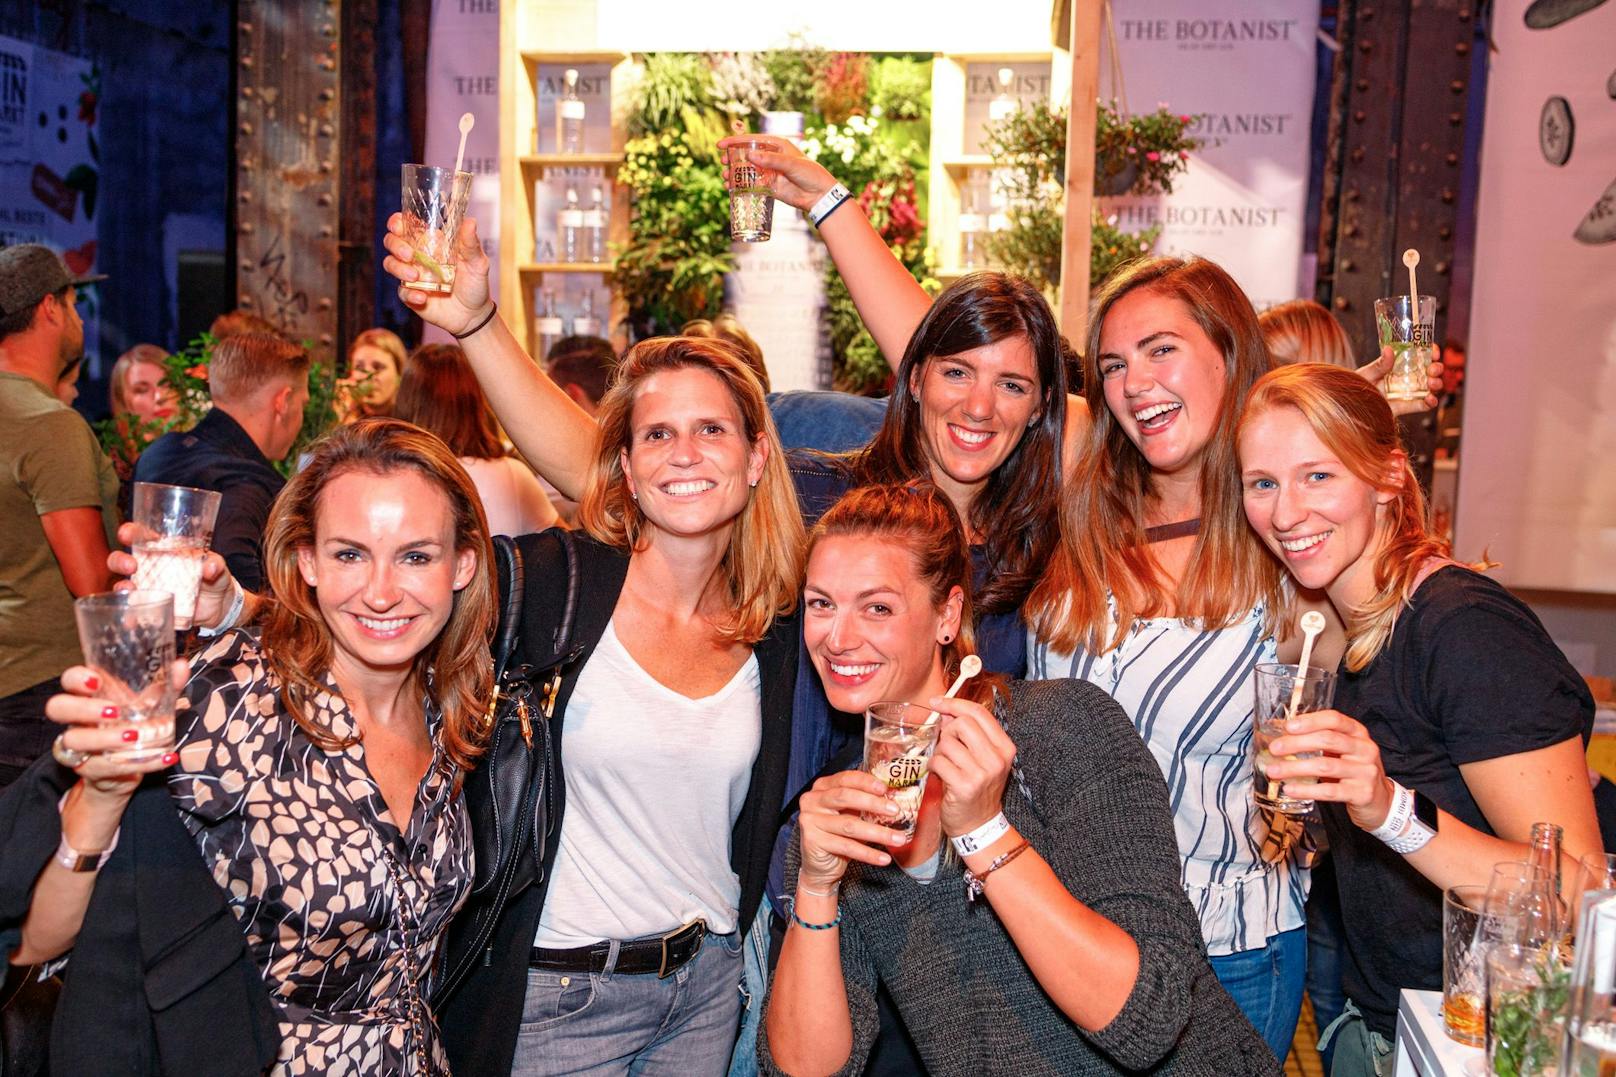 Am 24. und 25. September 2021 findet das Rumfestival gemeinsam mit dem Ginmarkt in der Ottakringer Brauerei statt.